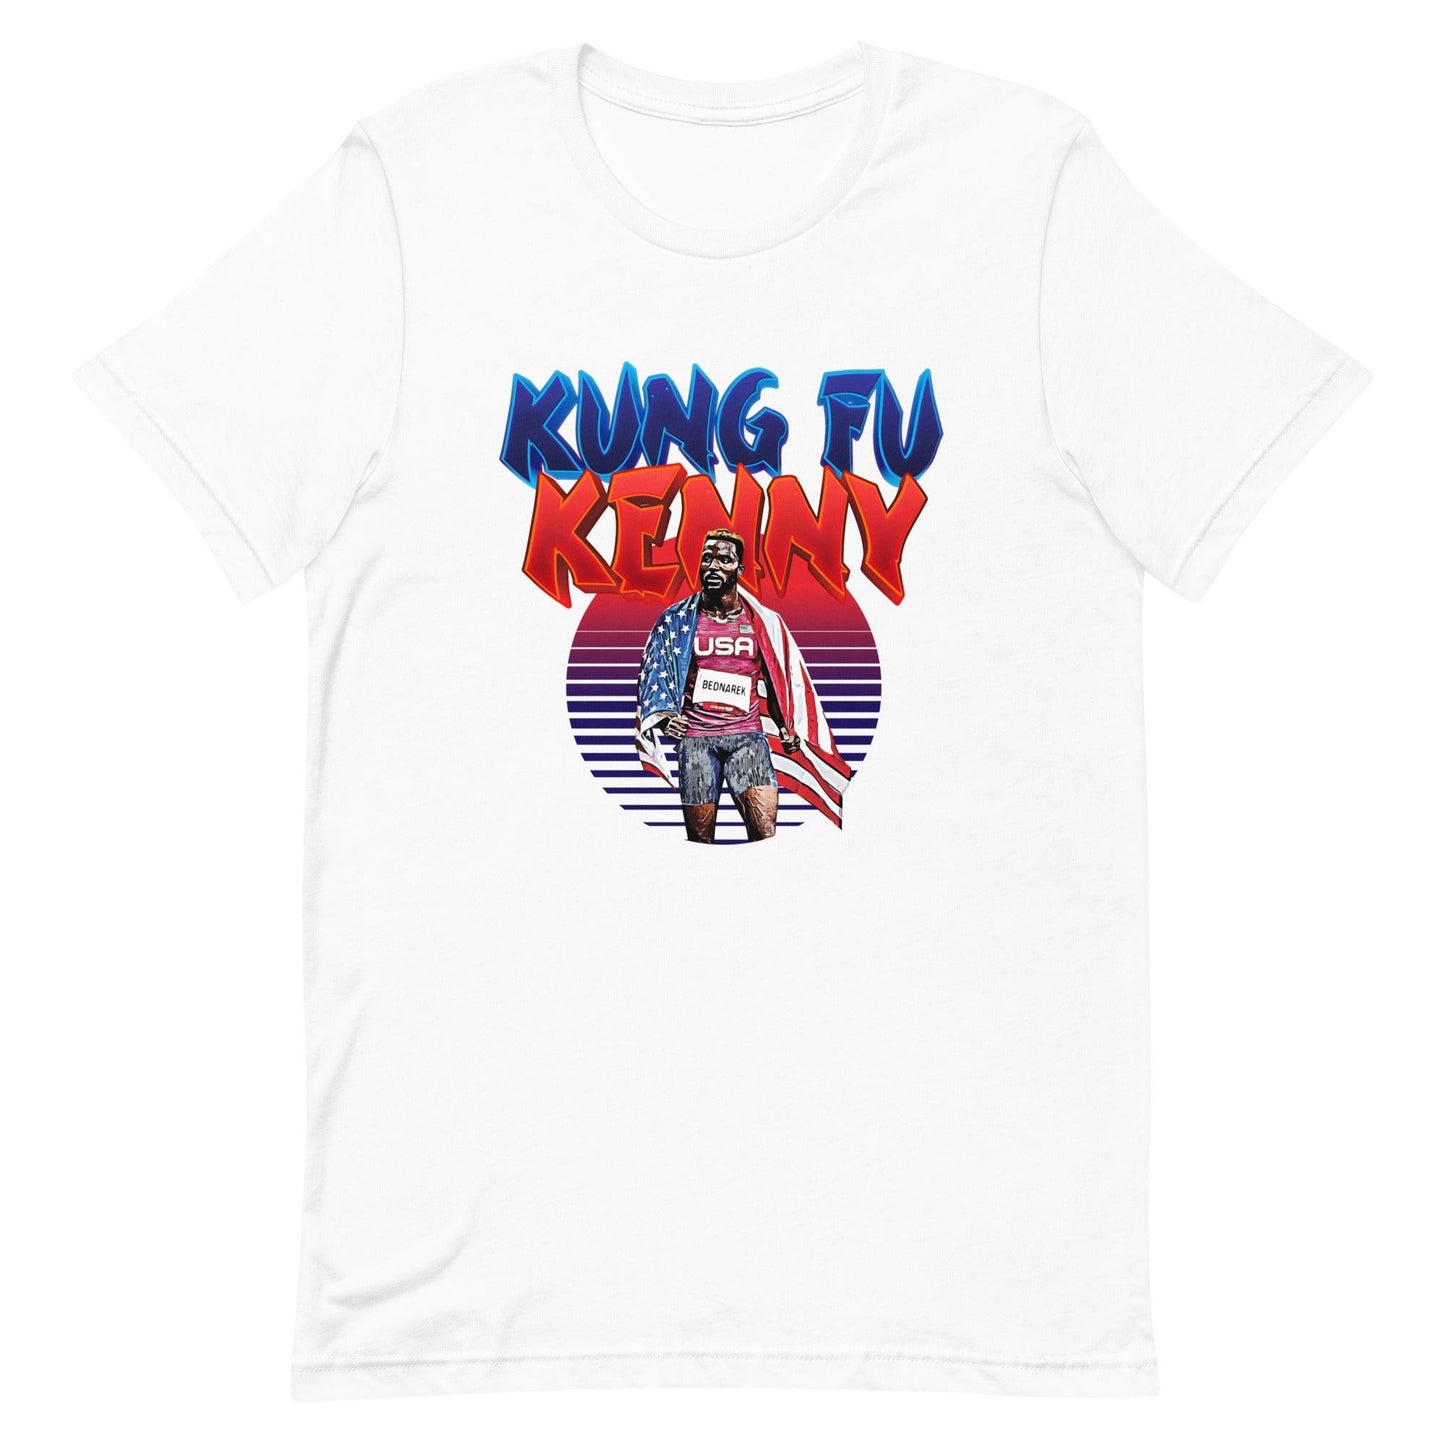 Kenny Bednarek "Kung Fu Kenny" t-shirt - Fan Arch